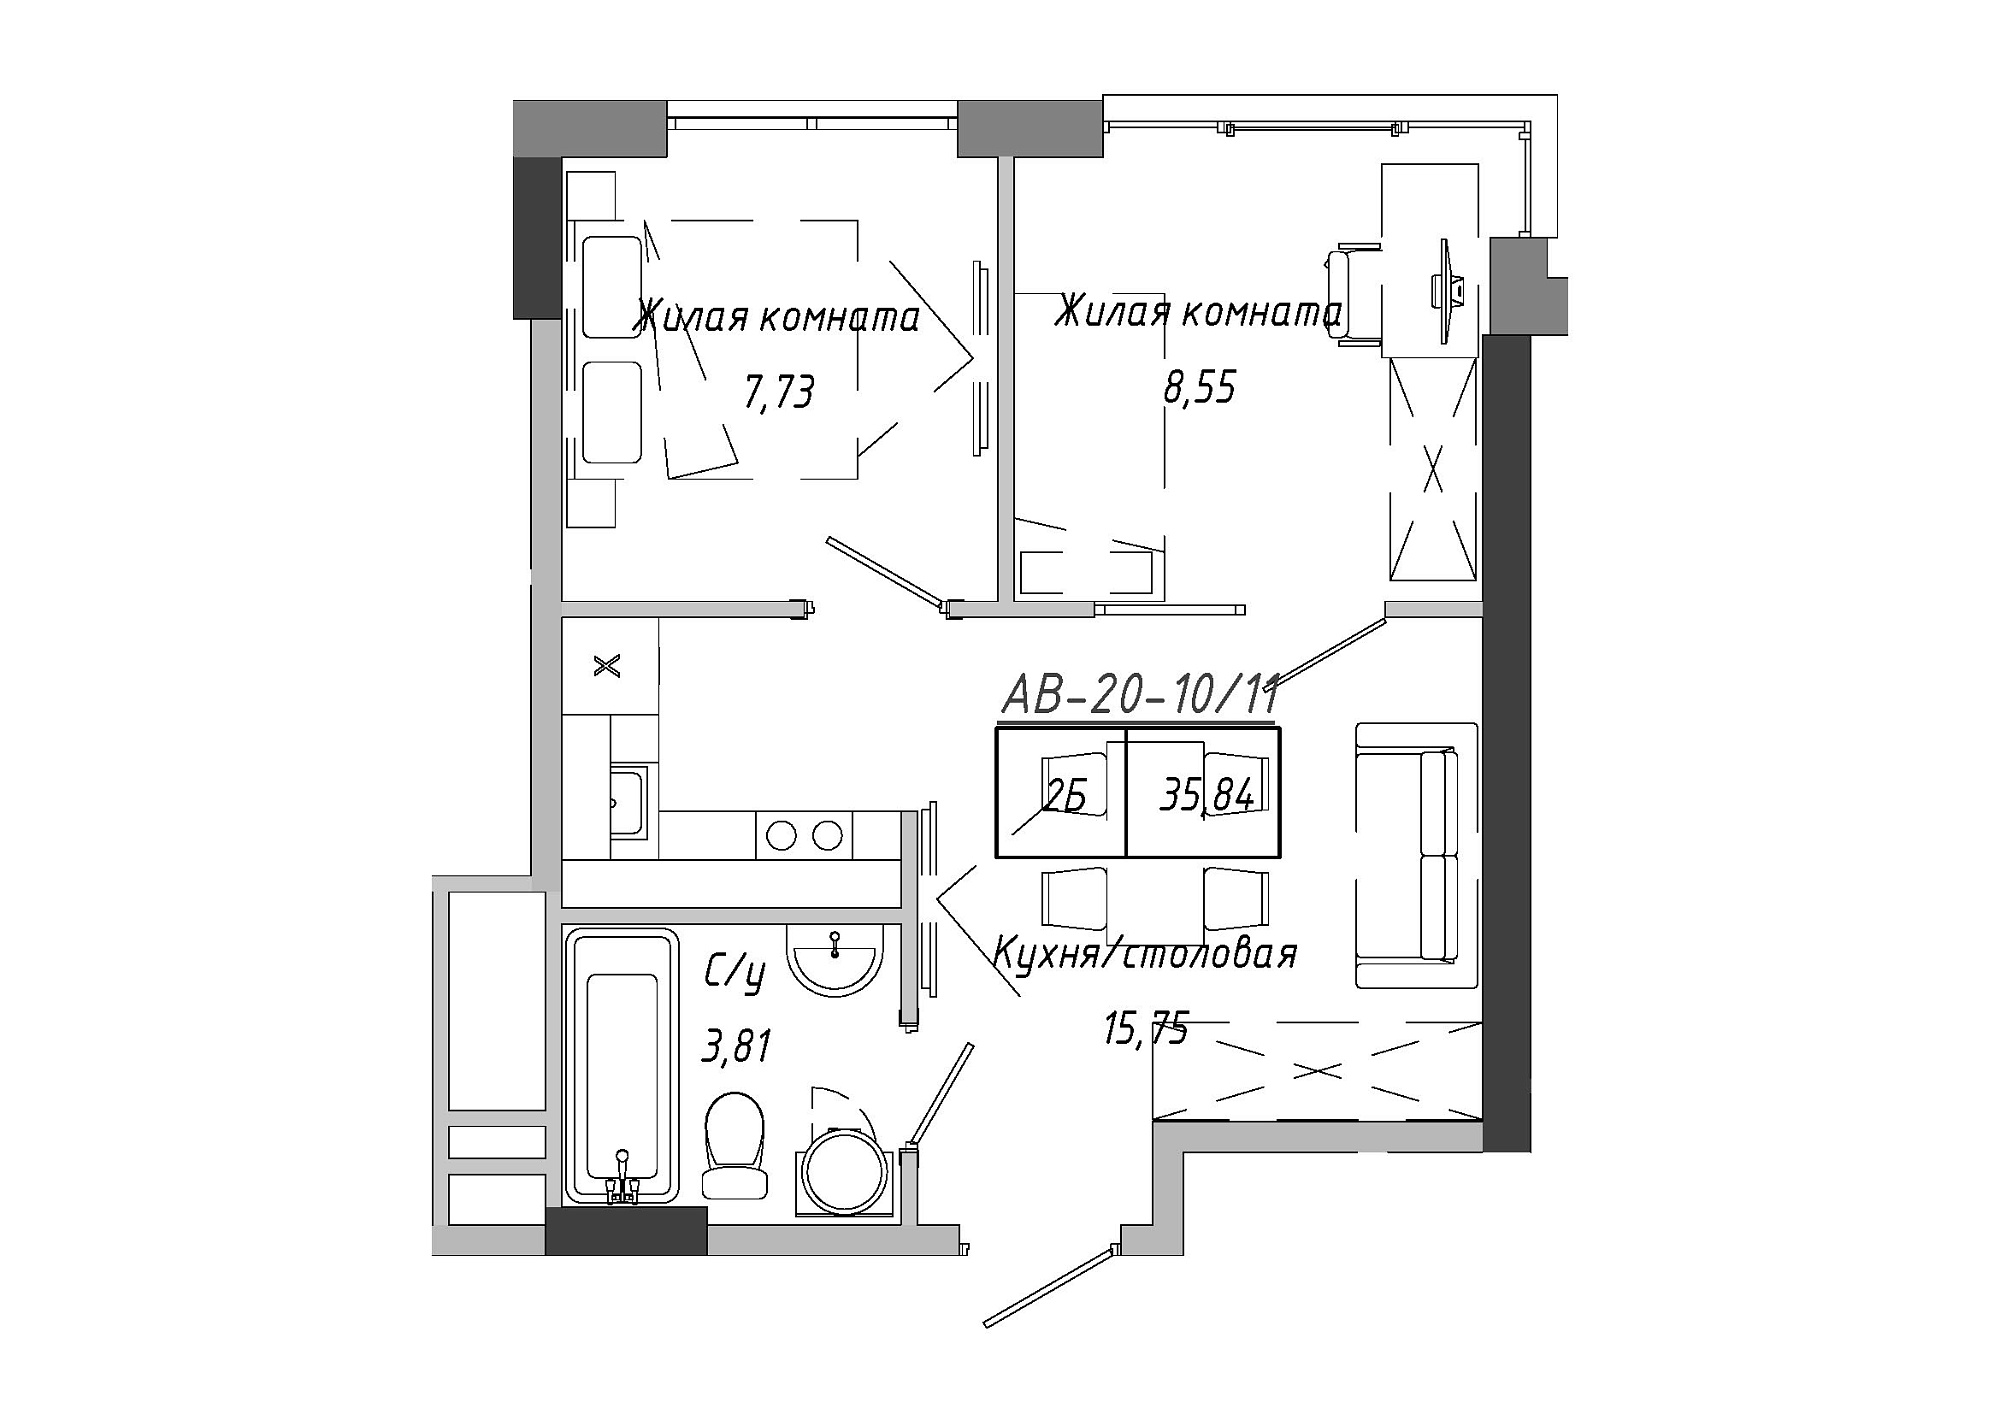 Планування 2-к квартира площею 36.12м2, AB-20-10/00011.